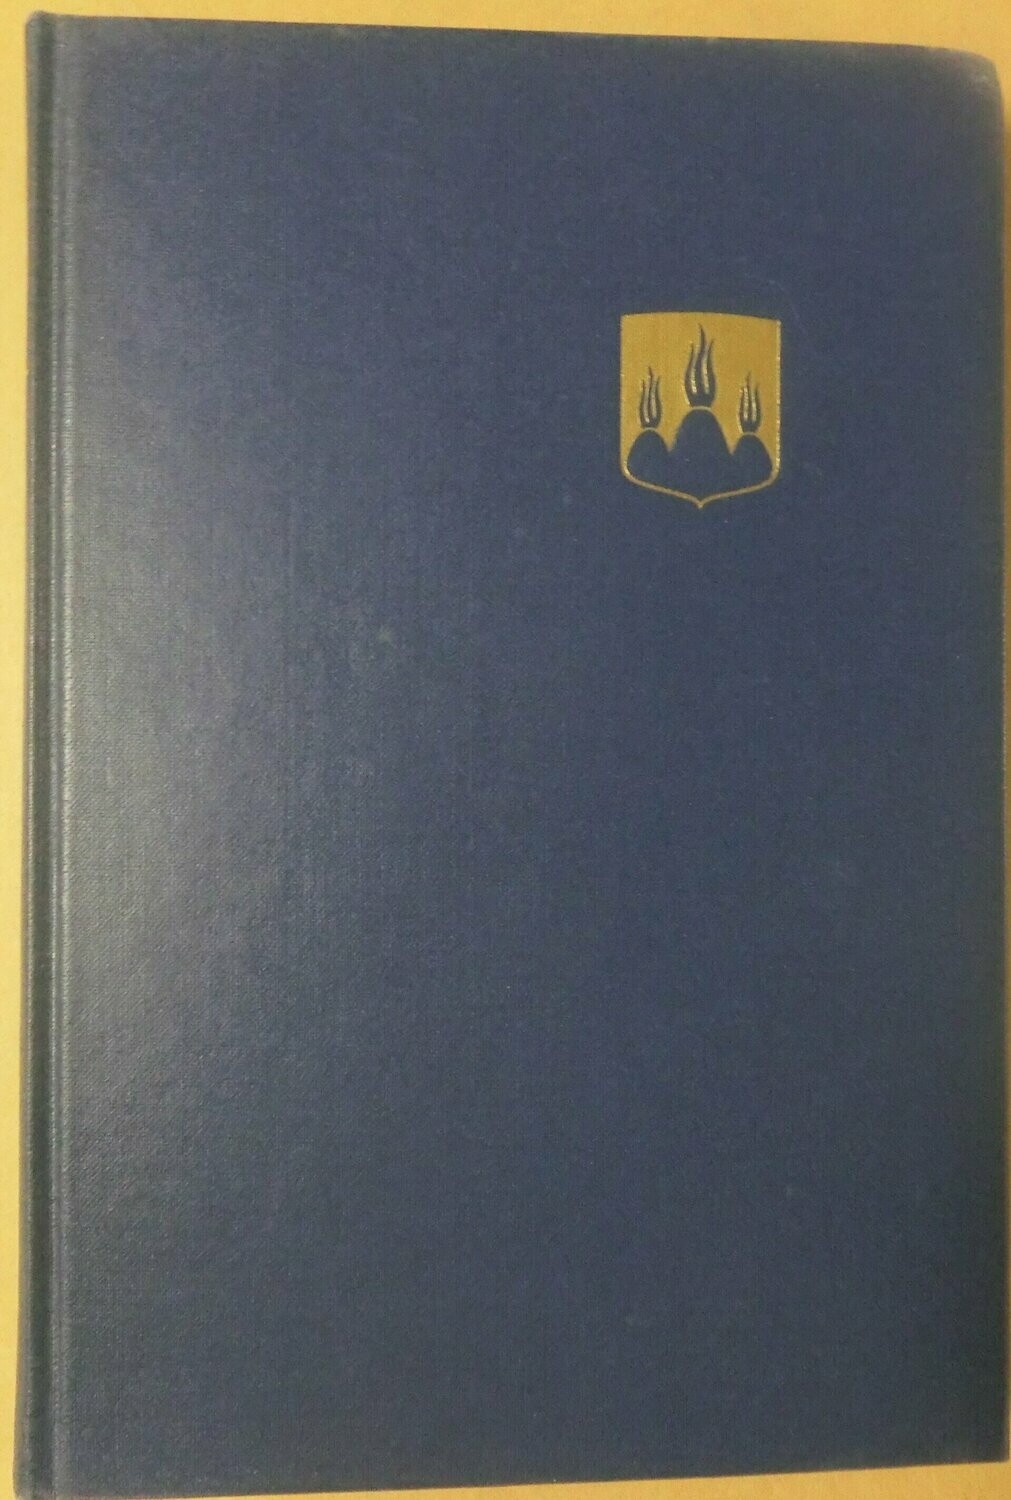 STF årsskrift 1967 - Västmanland